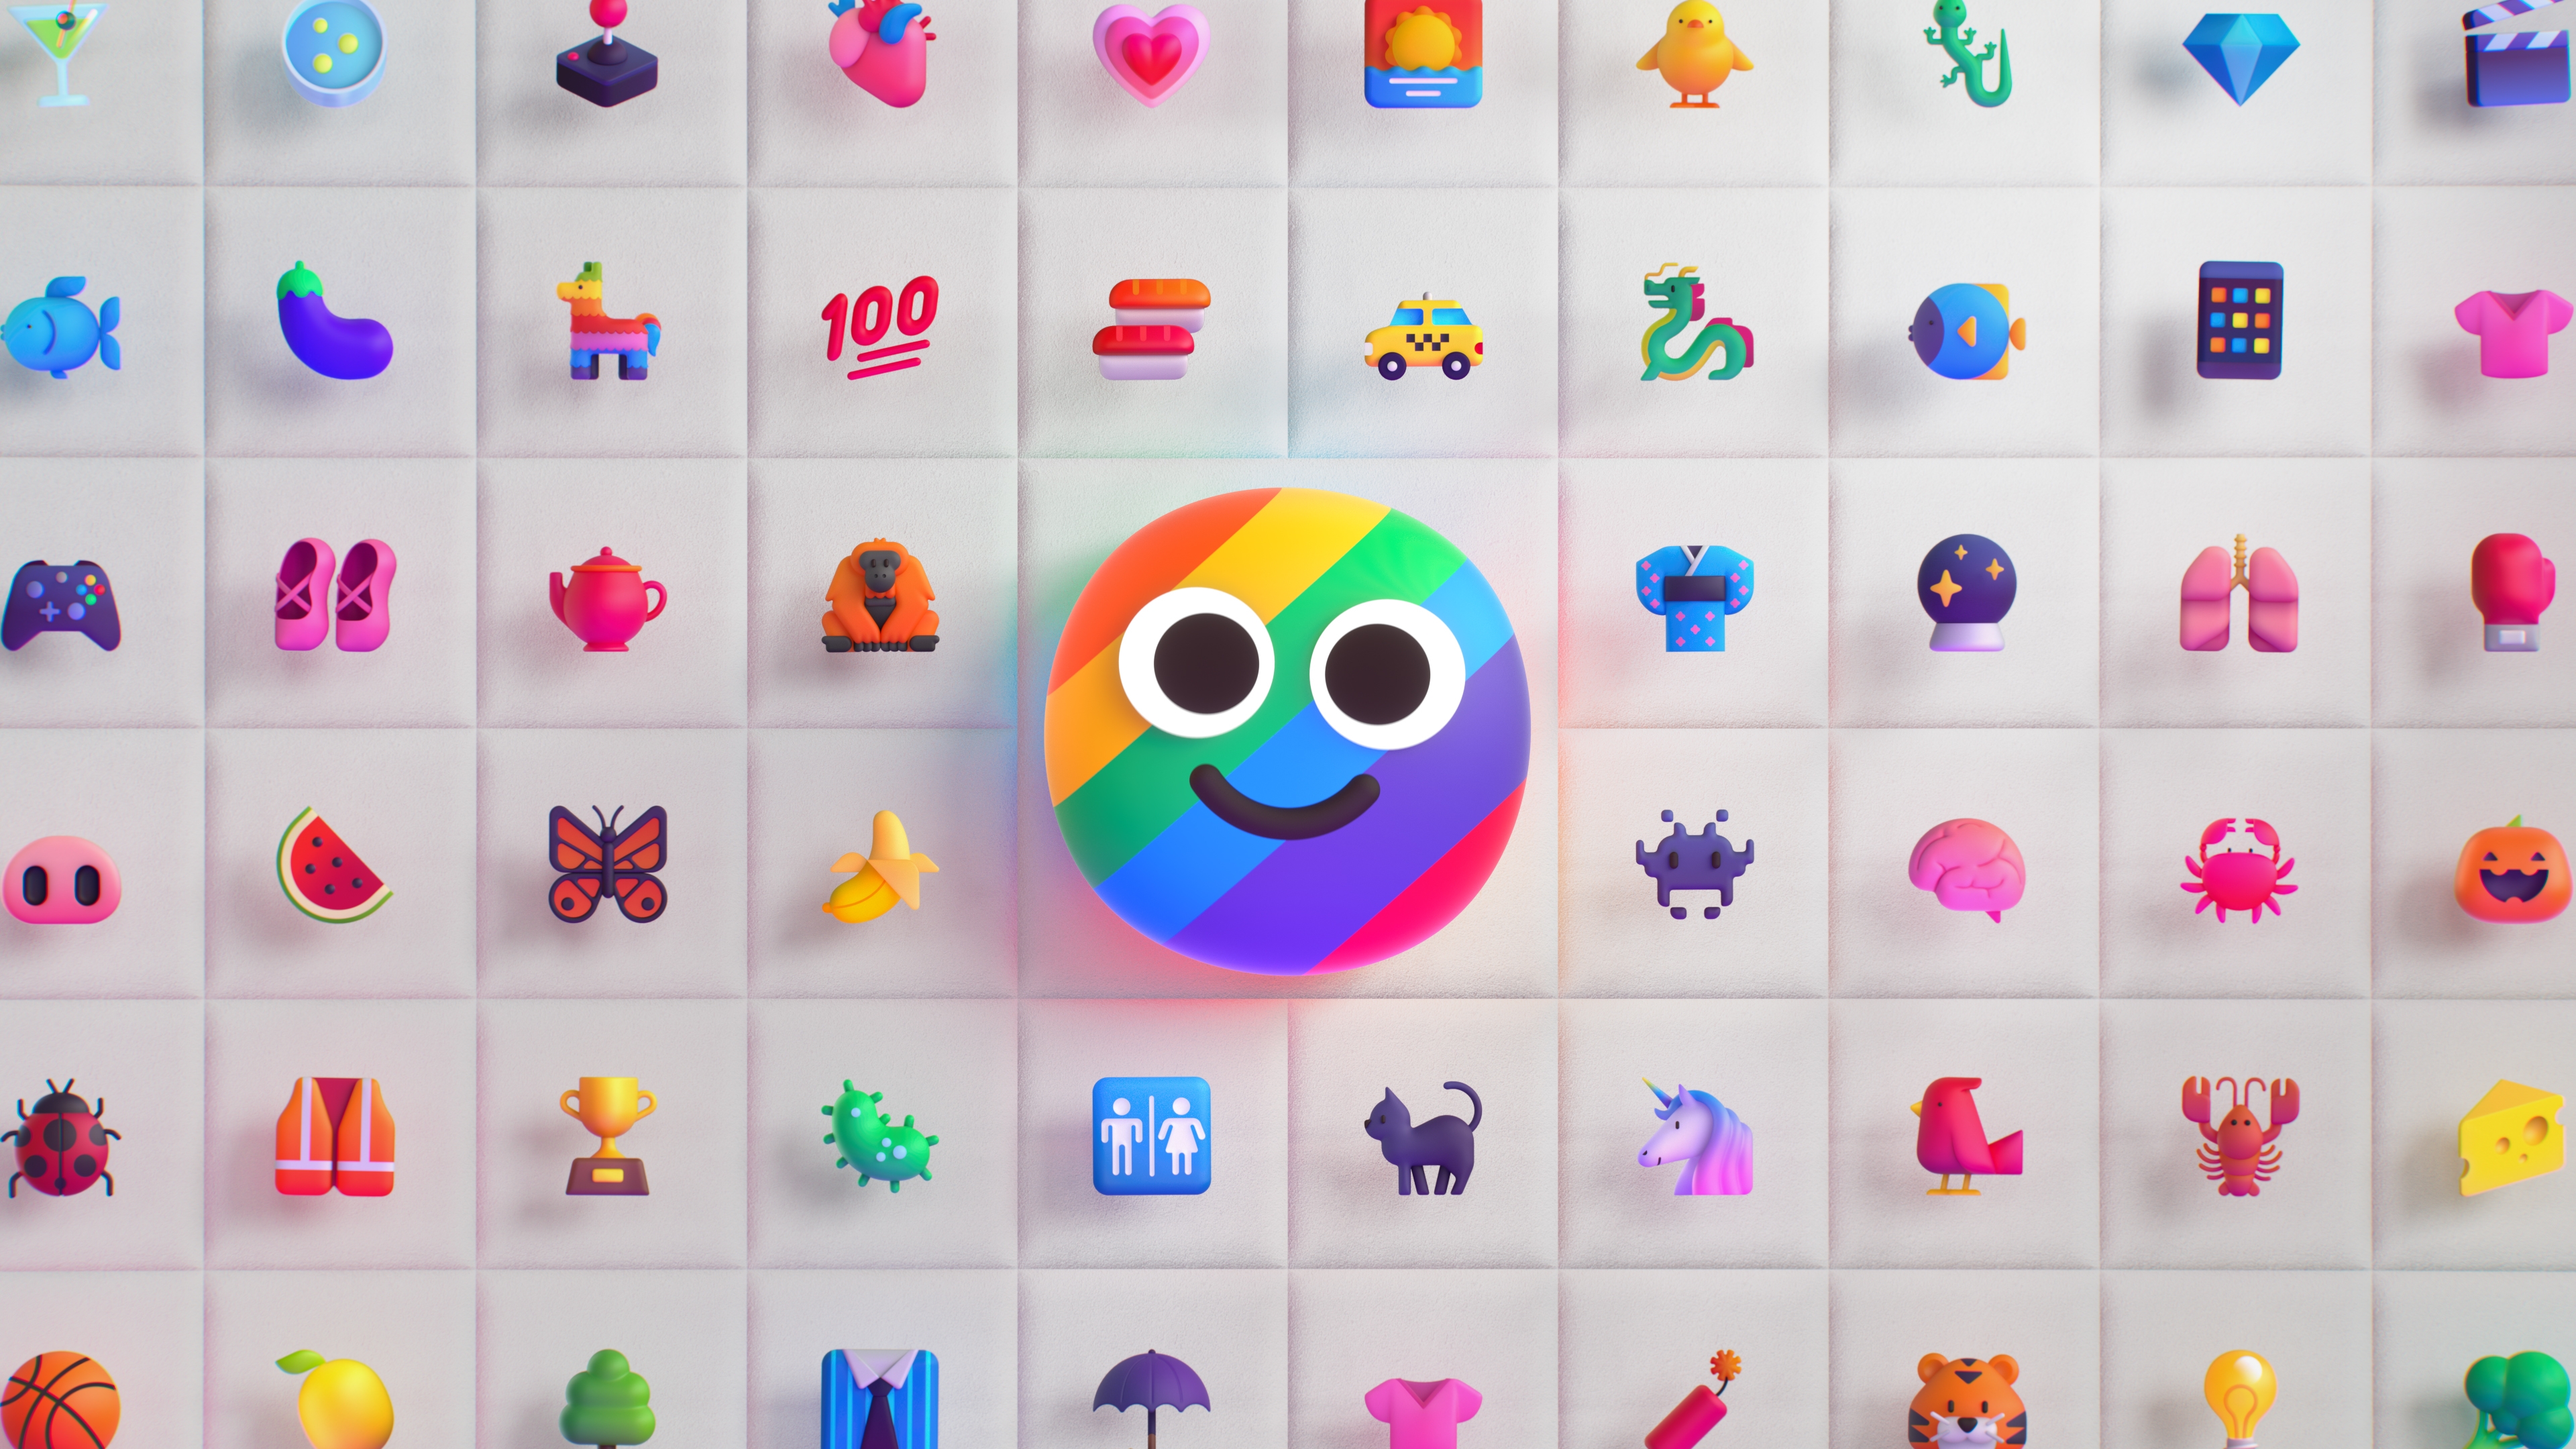 HD wallpaper, Emoji, Emoticons, Multicolor, Colorful Background, Cute Smiley